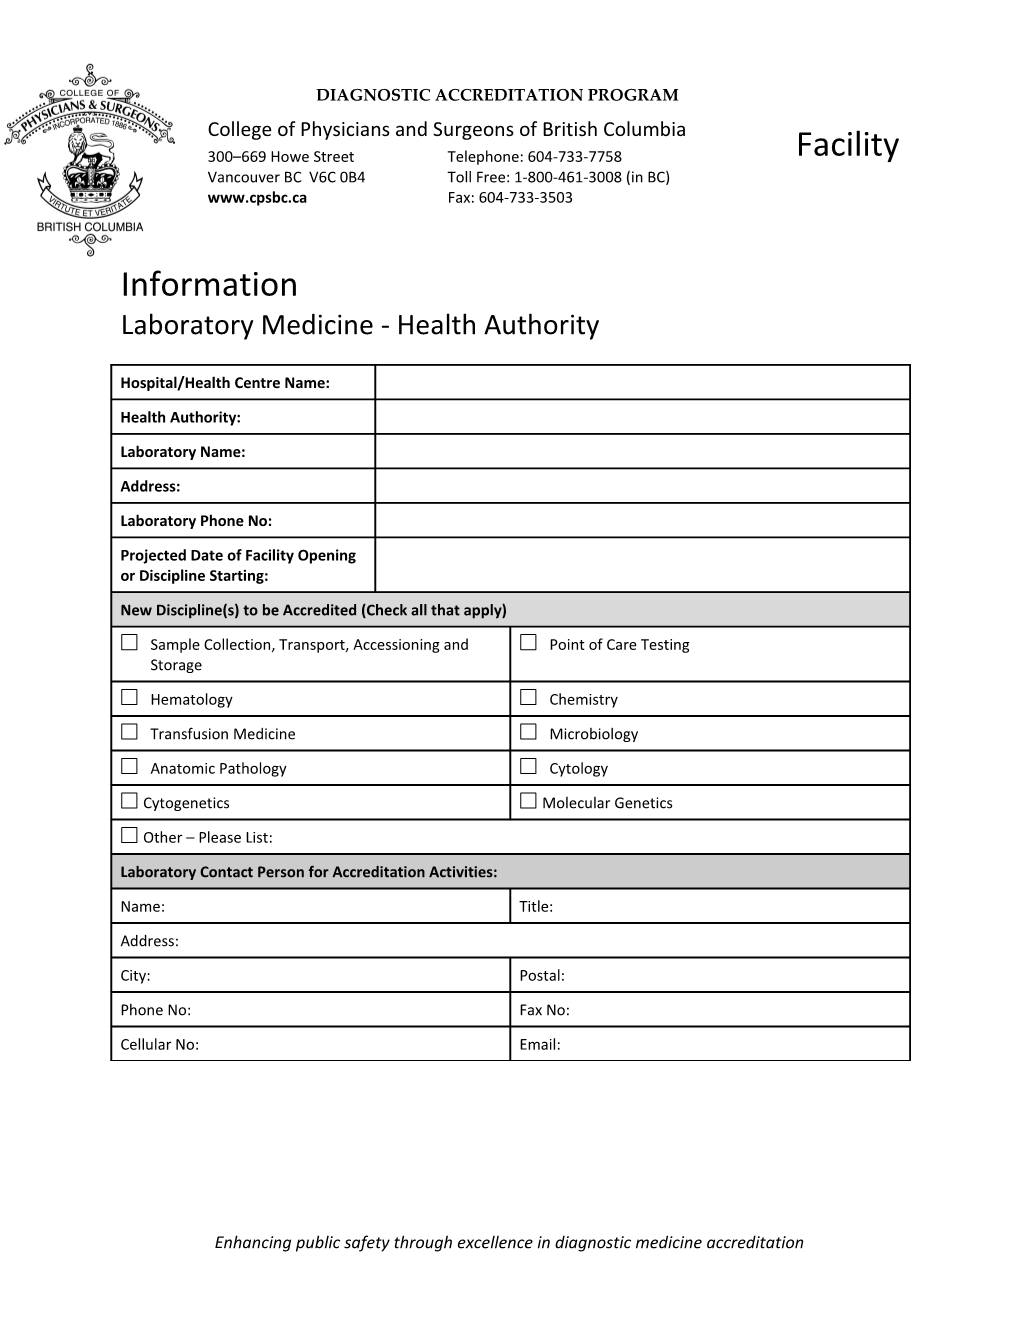 Laboratory Medicine - Health Authority